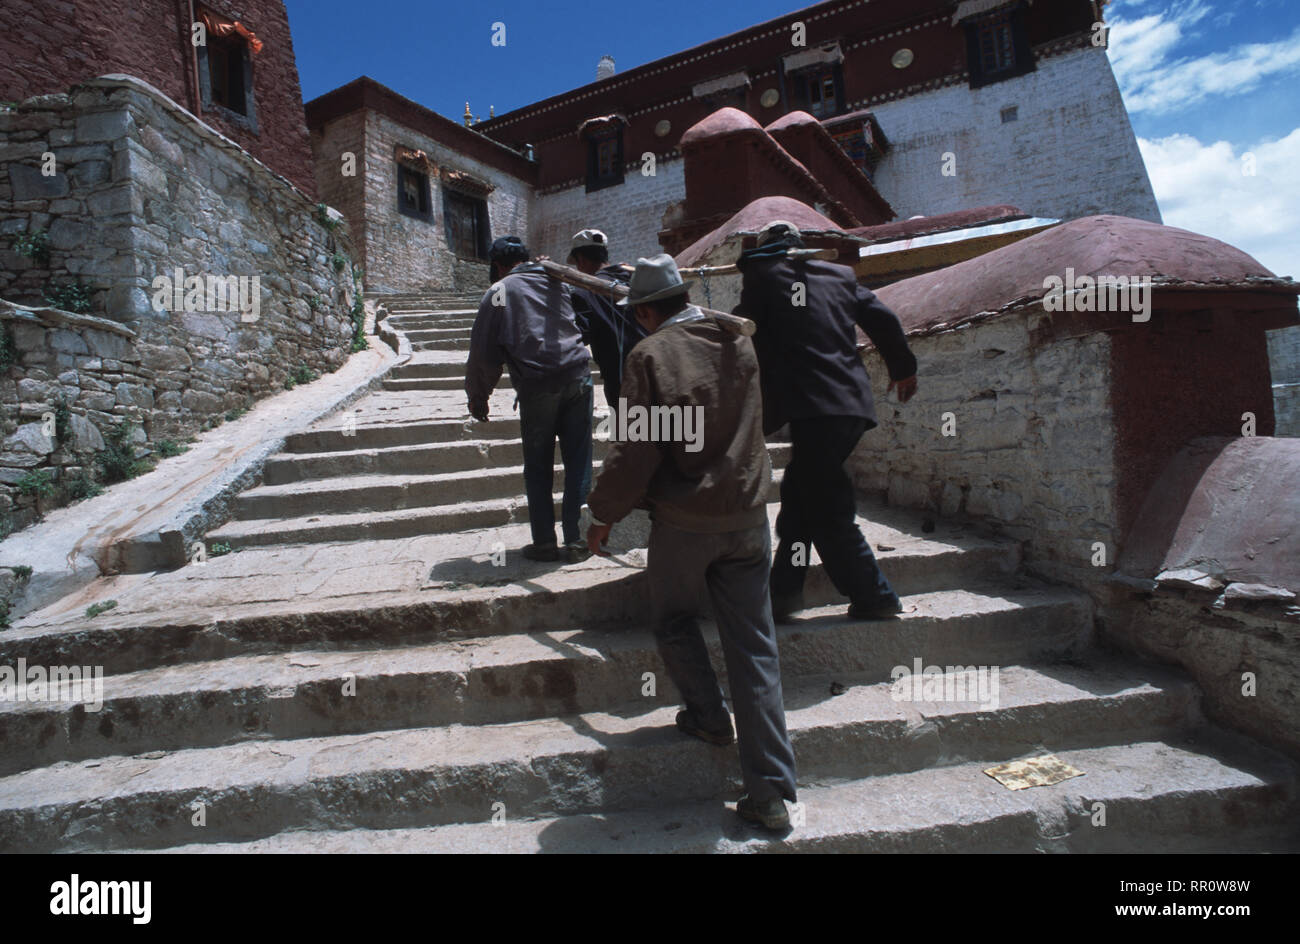 Didascalia: Ganden, catrame, Cina - Lug 2001. Lavoratori portano pietra fino al loro lavoro sito al monastero di Ganden nel Tibet centrale. Saccheggiato durante la Cina culturale Foto Stock